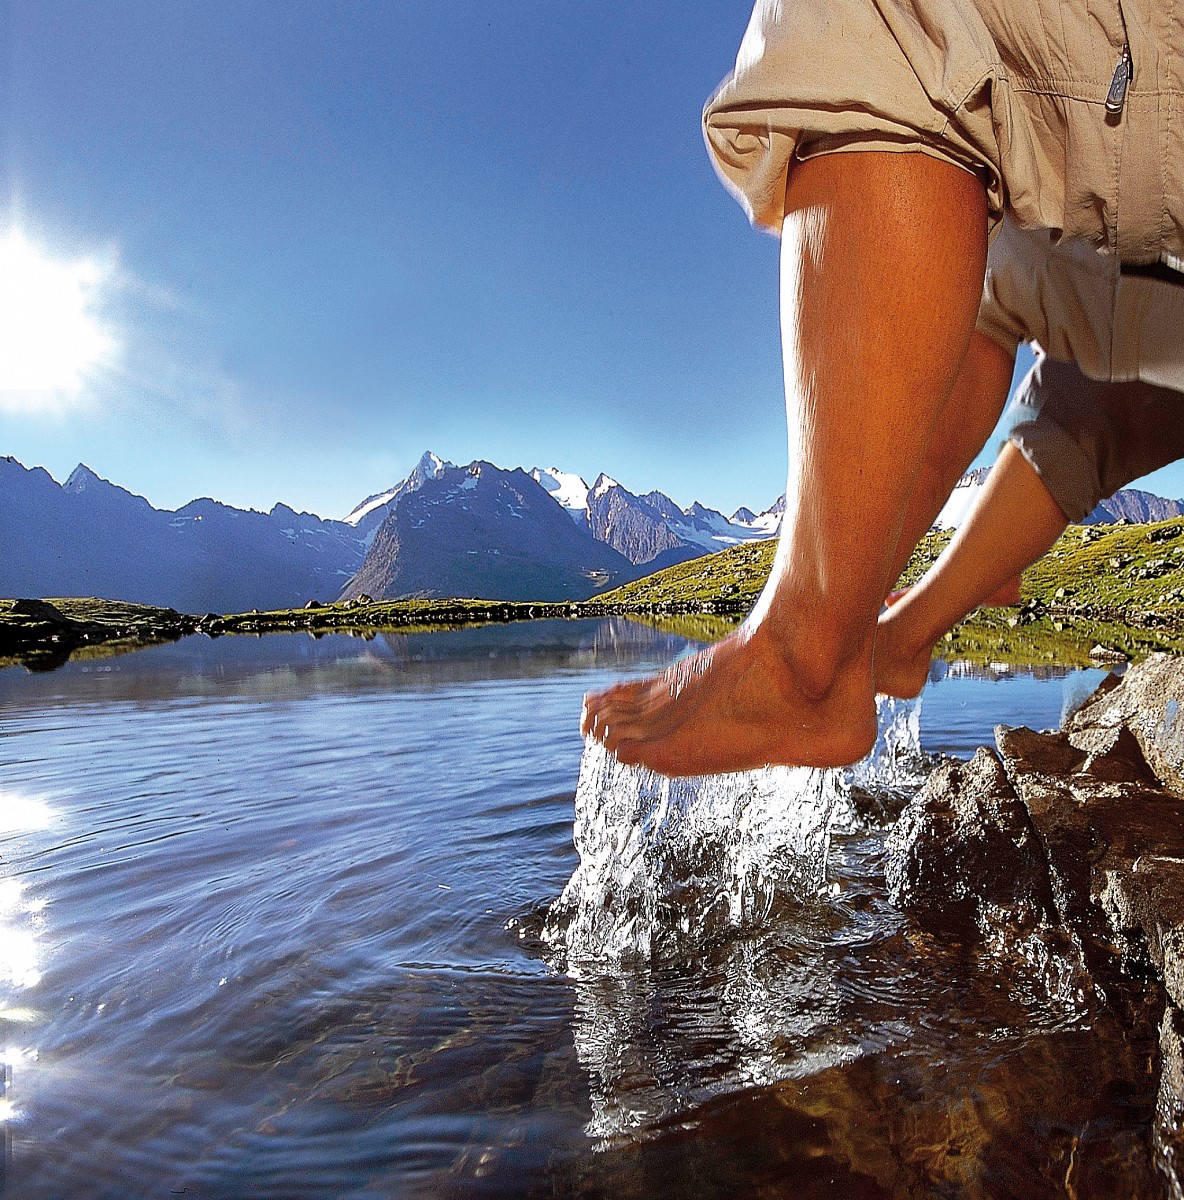 Erfrischend ist ein Fußbad in einem der25.000 Seen, Teiche und Lacken, die allein in Österreich registriert sind. Je höher umso kühler. © Hotel Falknerhof, ÖT, Ritschel